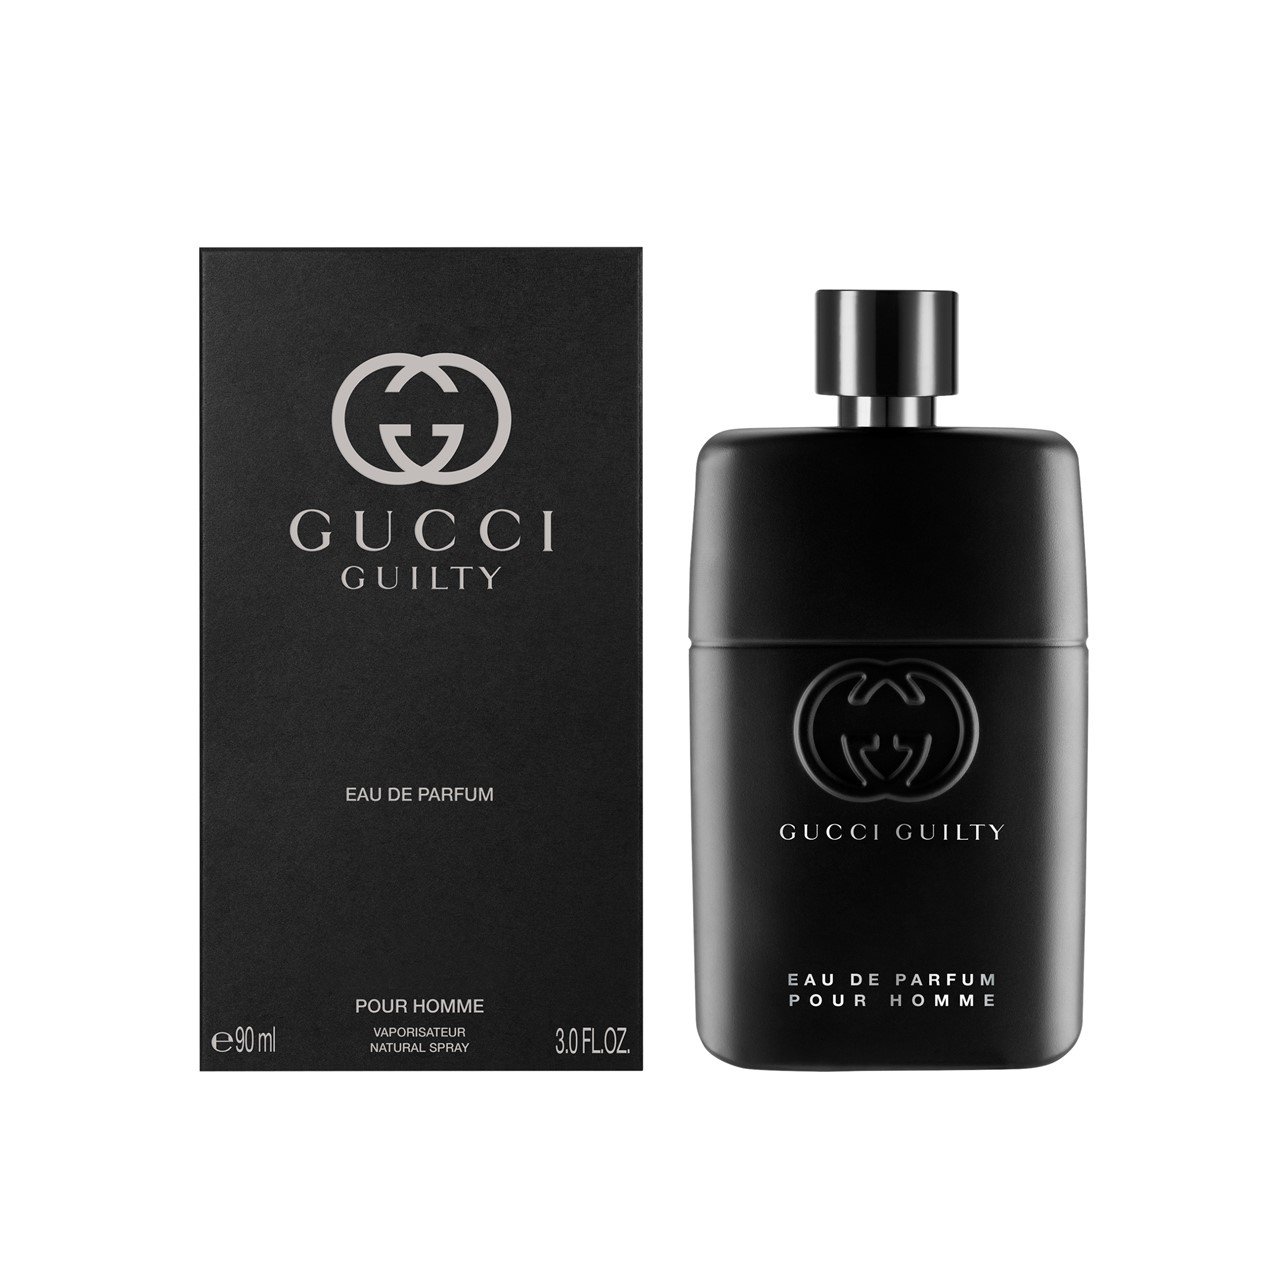 Gucci Guilty Eau de Parfum For Men 90ml (3.0fl oz)